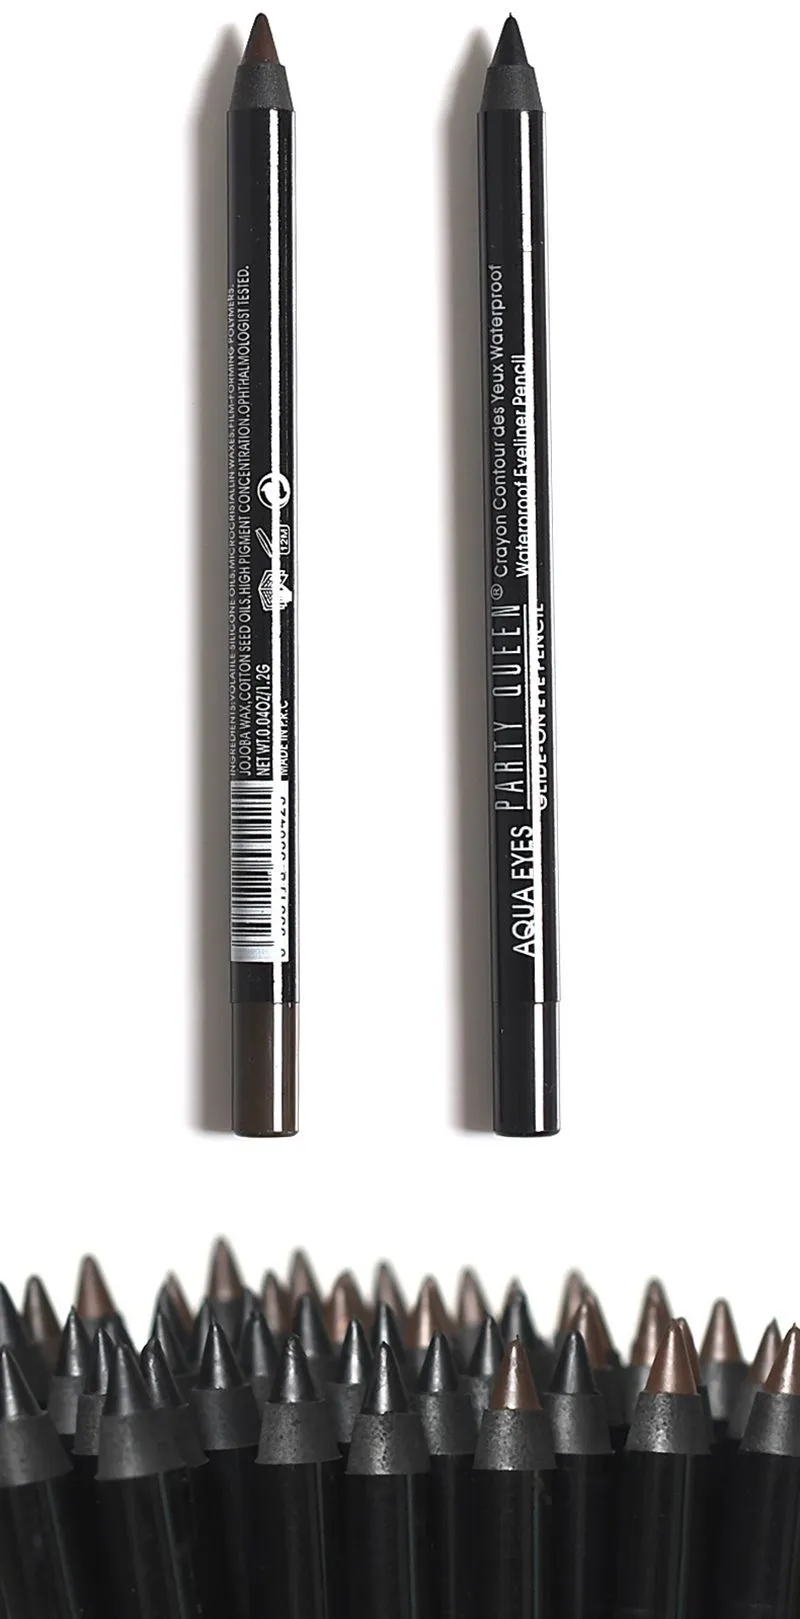 Party Queen Brand New Waterproof EyeLiner Pencil Makeup Long Lasting Waterproof Black Brown Color Pencil Eyeliner2735860